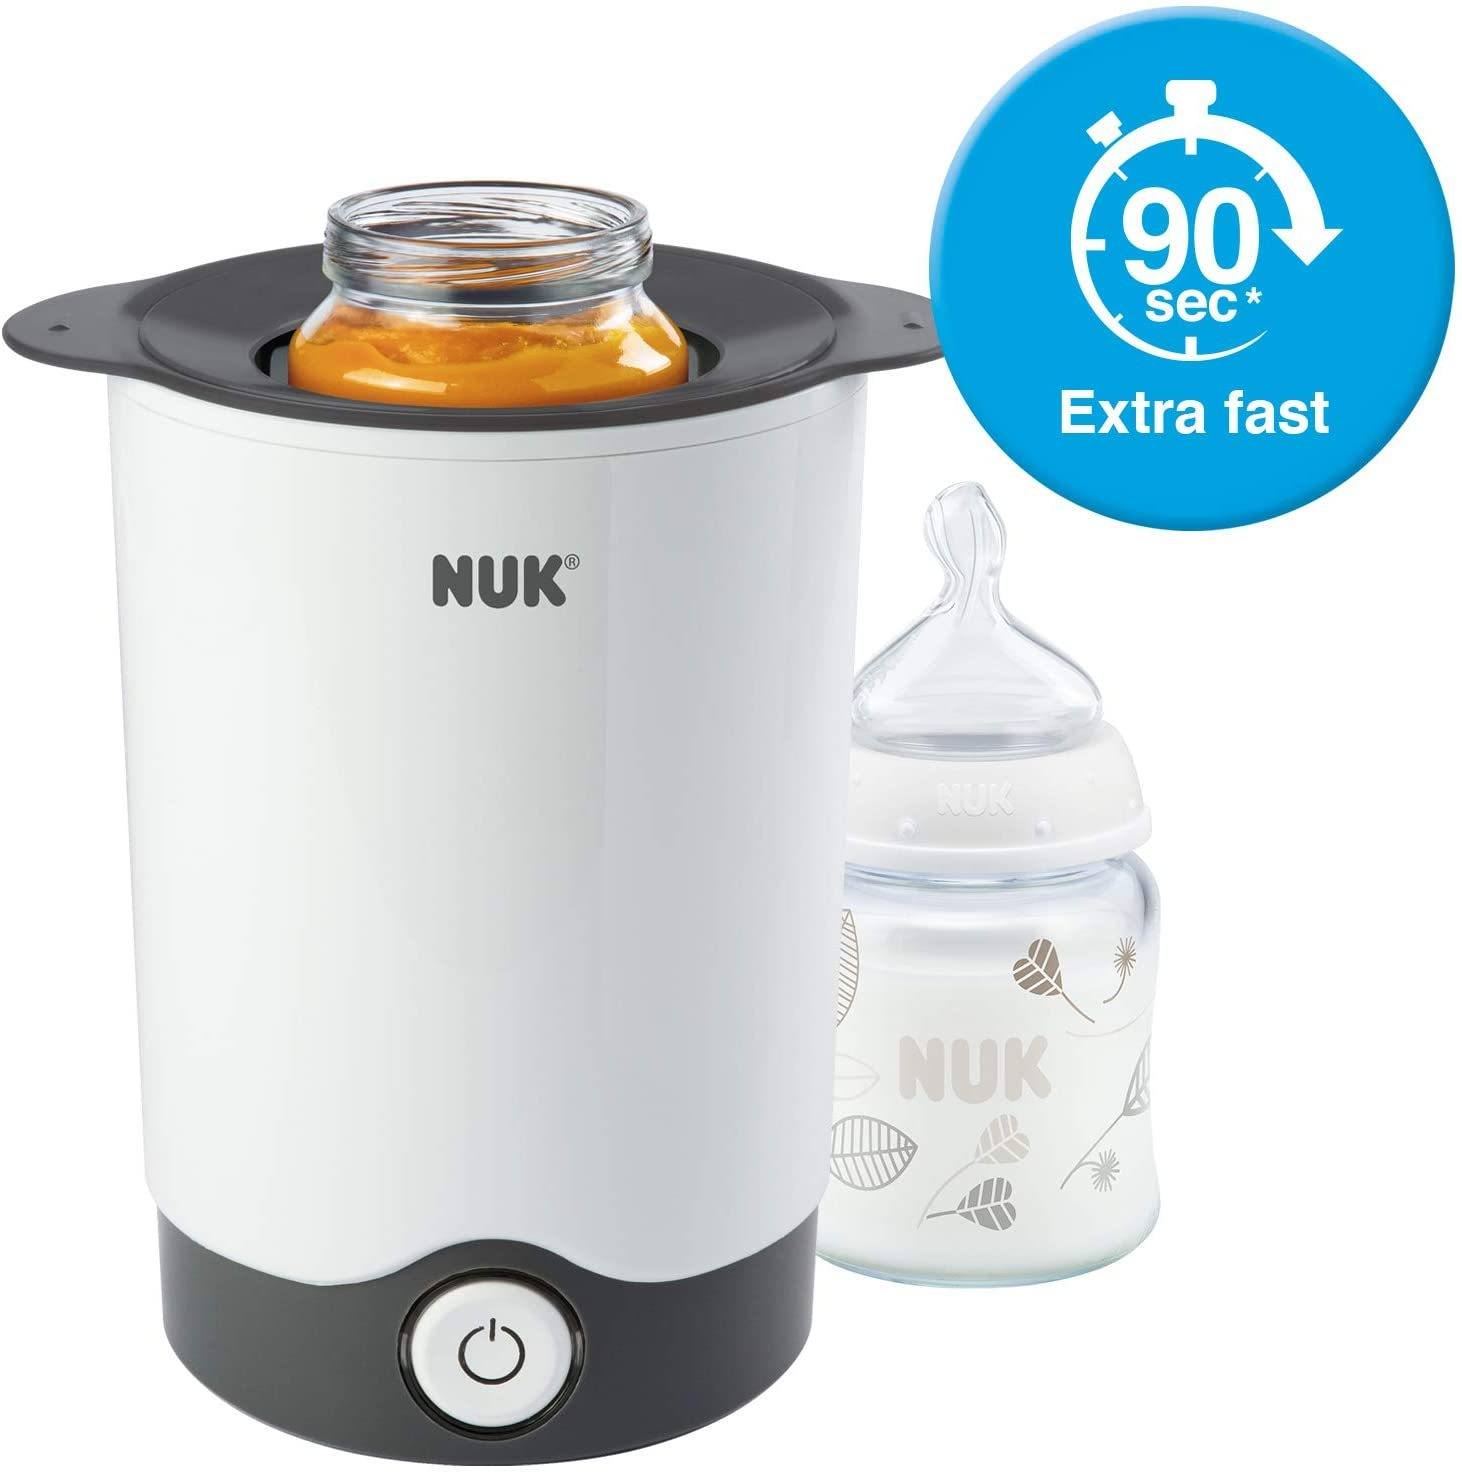 NUK Thermo Express Aquecedor de Mamadeira e Comida aquece em 90 segundos mamadeira de 120 ml Anne Claire Baby Store 